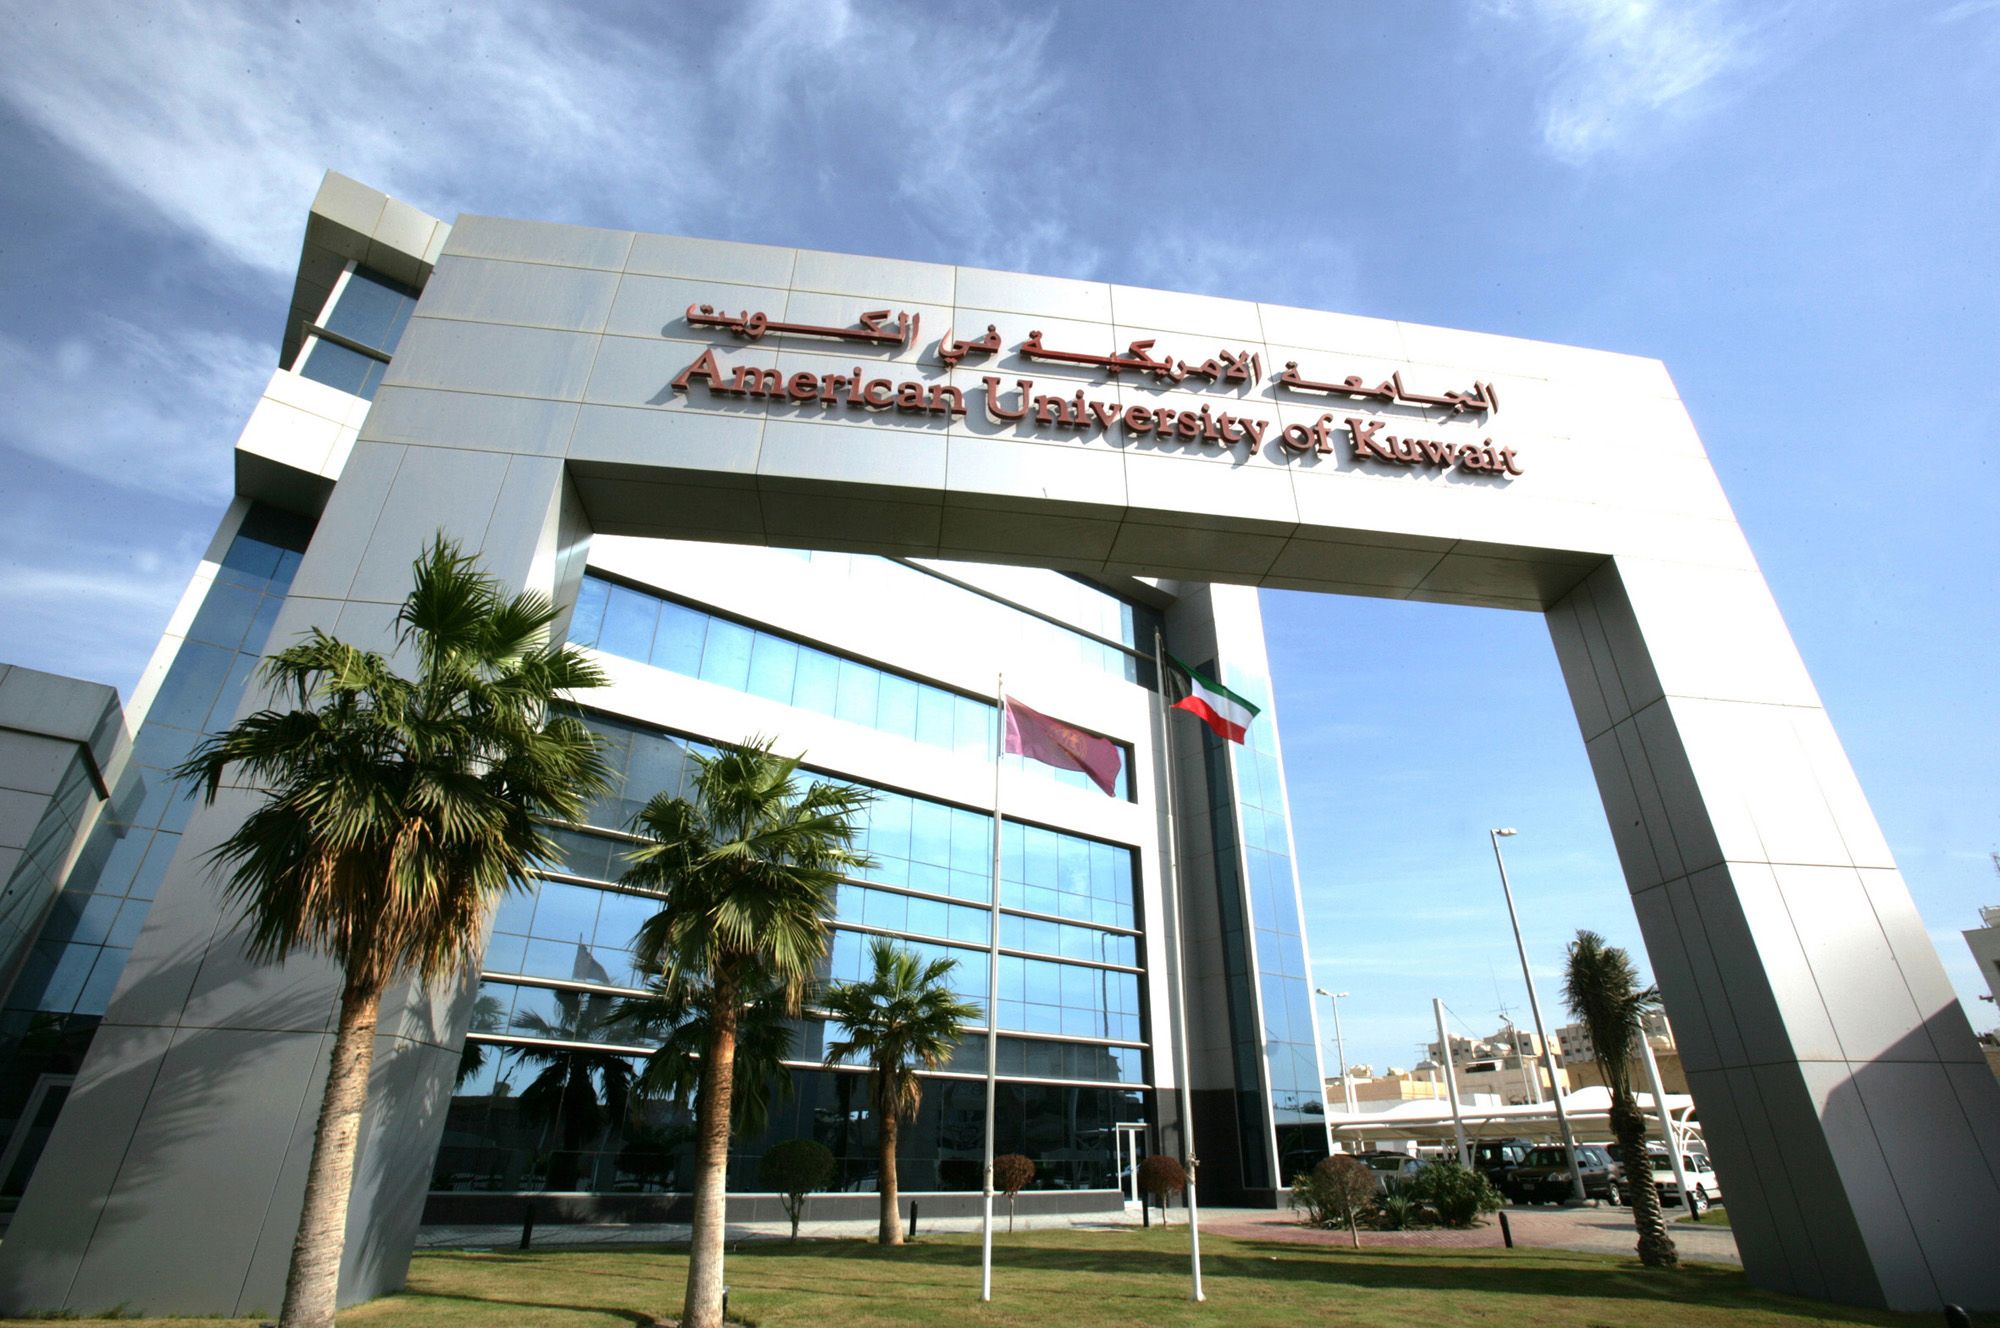 American University of Kuwait (AUK)